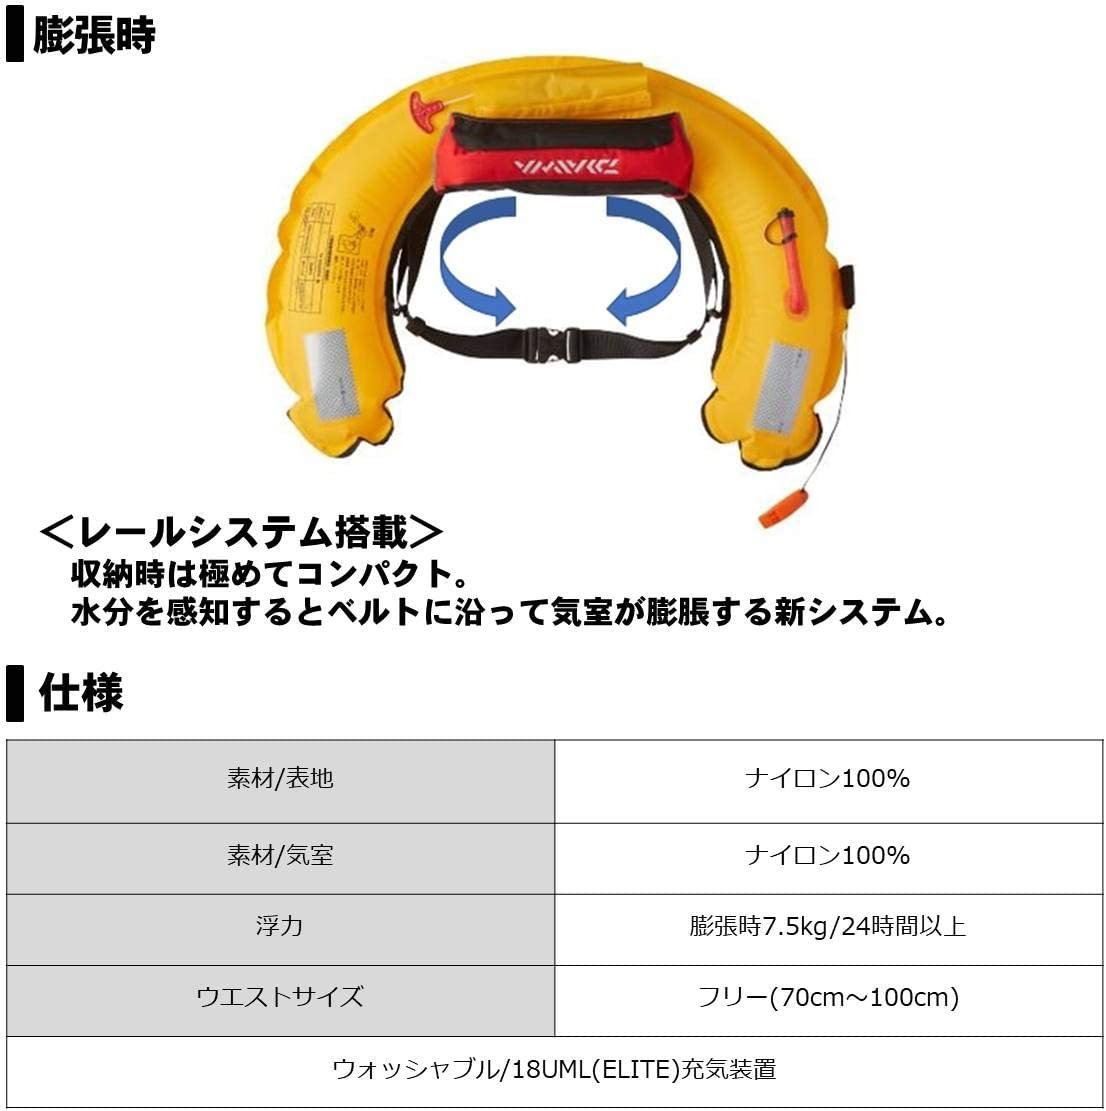 新品 ダイワ(DAIWA) コンパクトライフジャケット 【DF-2220】 釣り ライフジャケット フィッシング フリーサイズ ウエストタイプ自動 赤